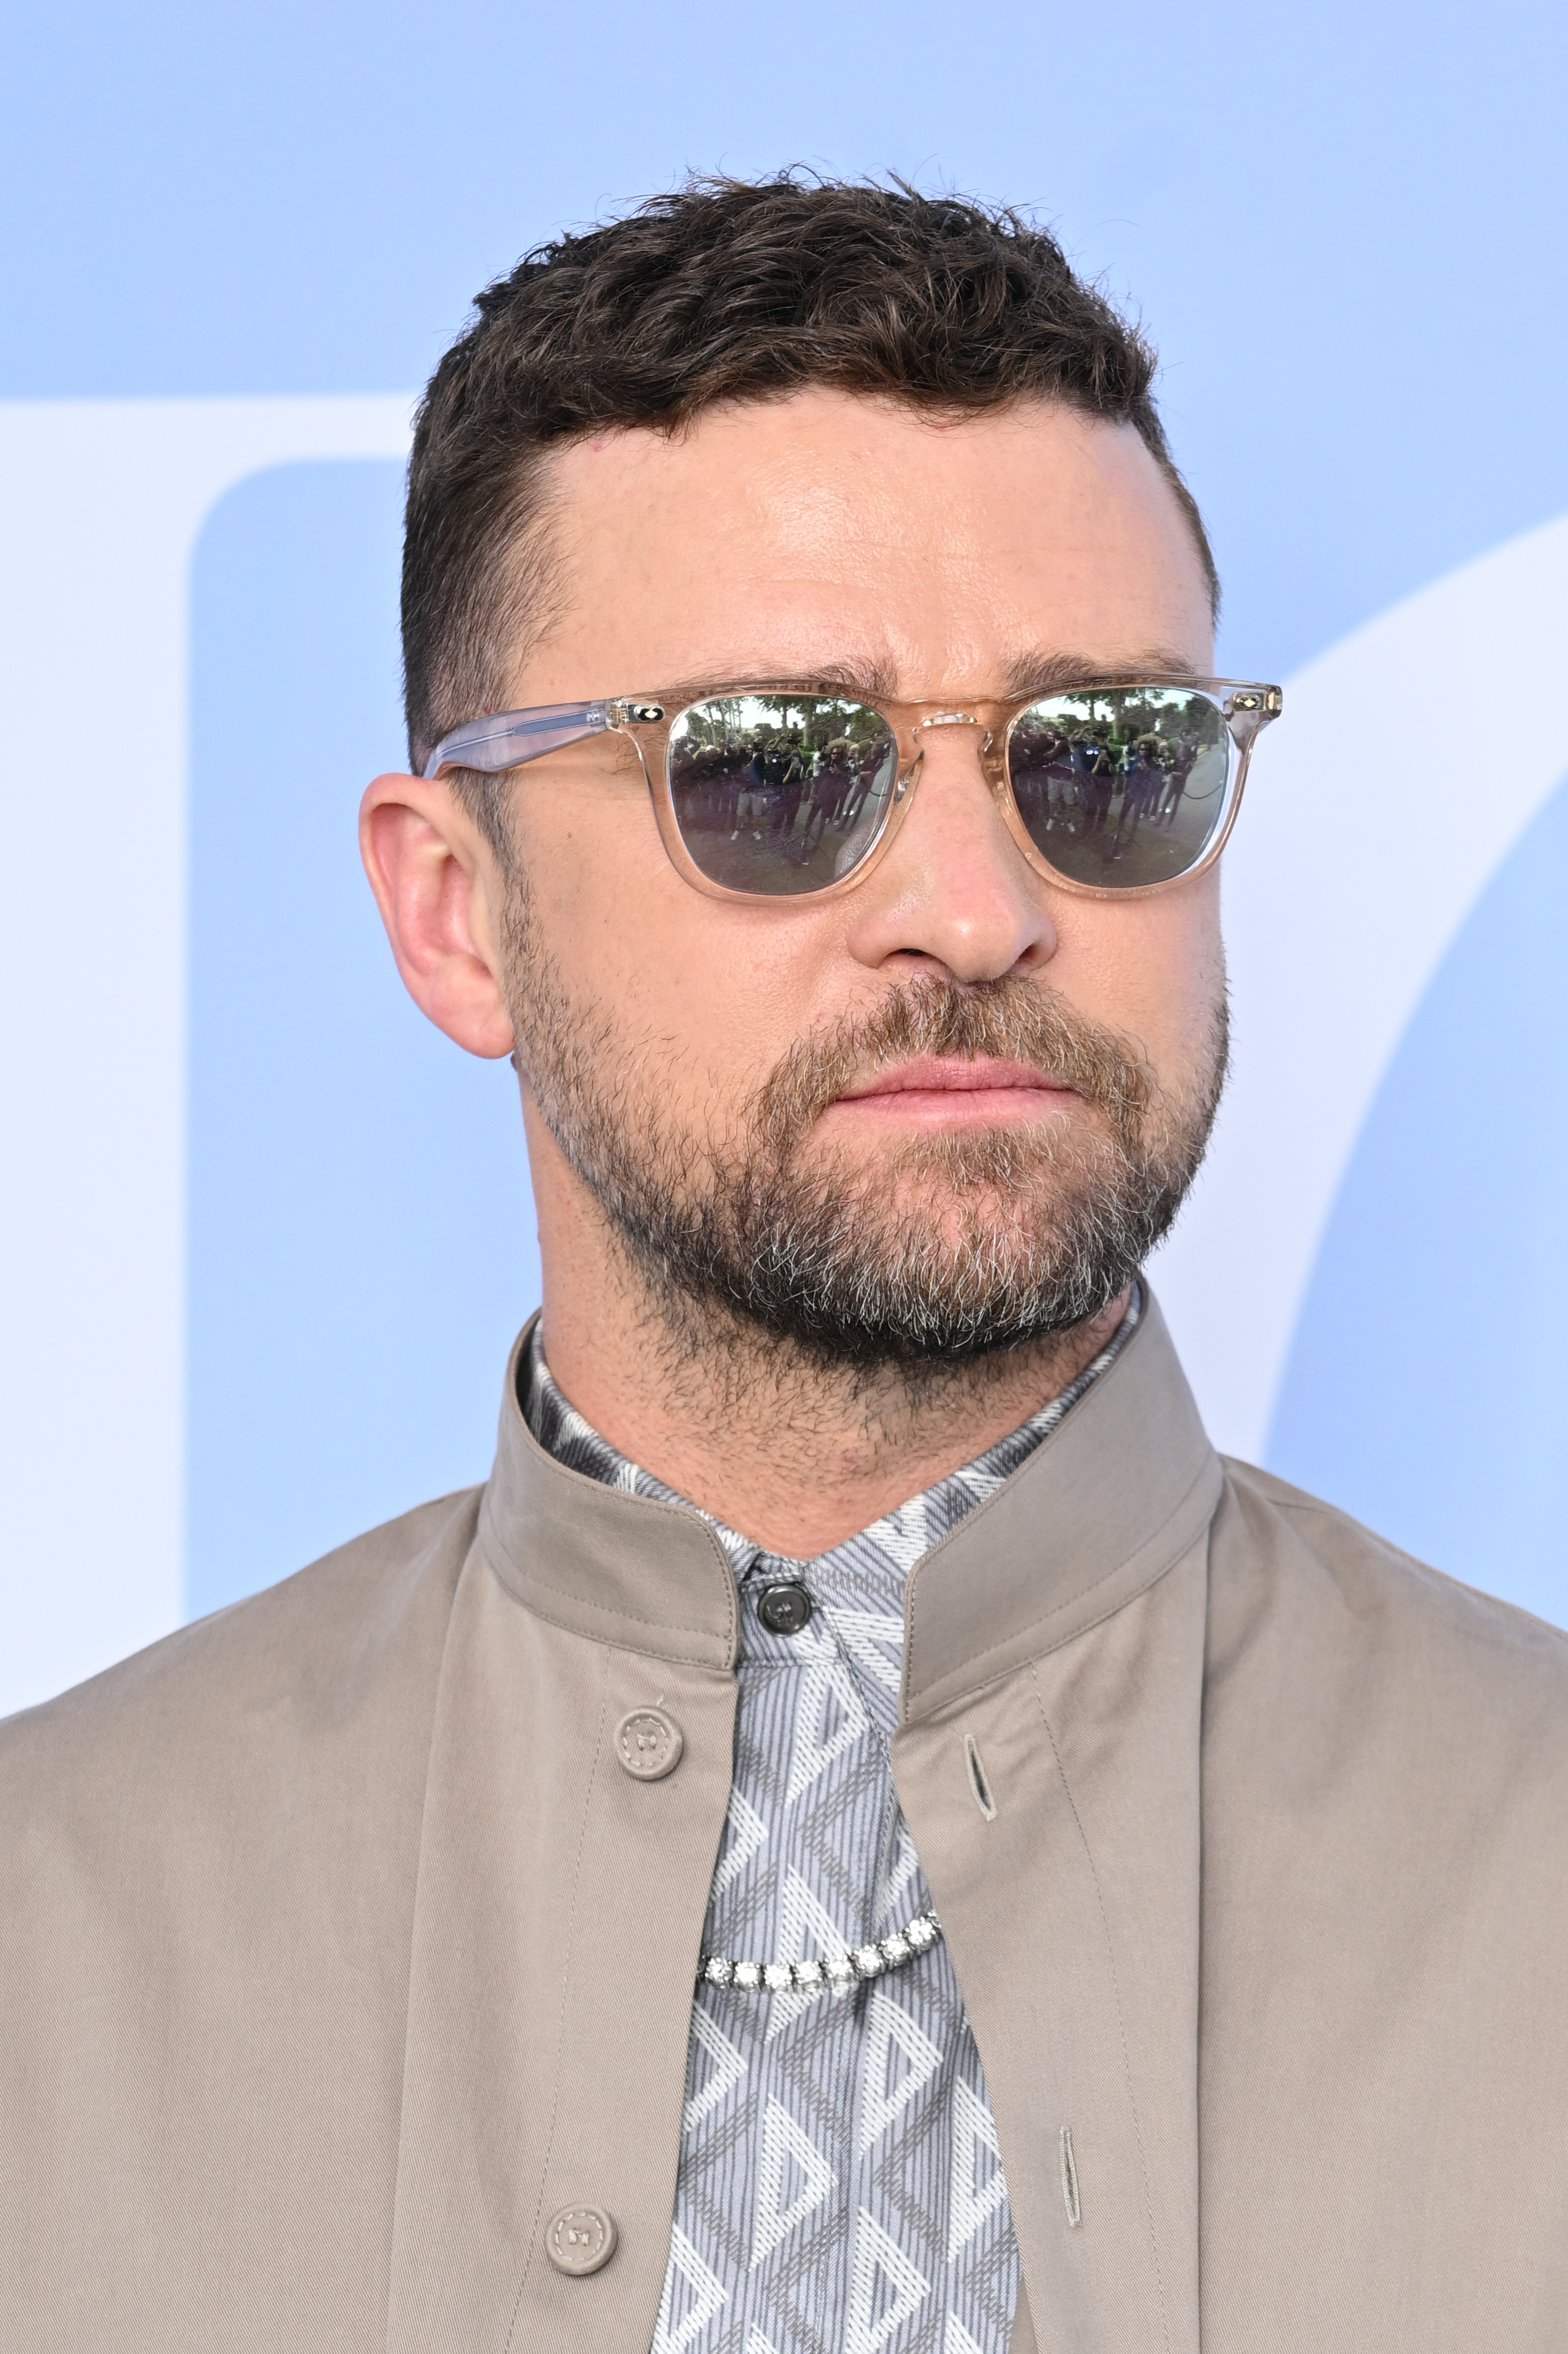 Closeup of Justin Timberlake in sunglasses